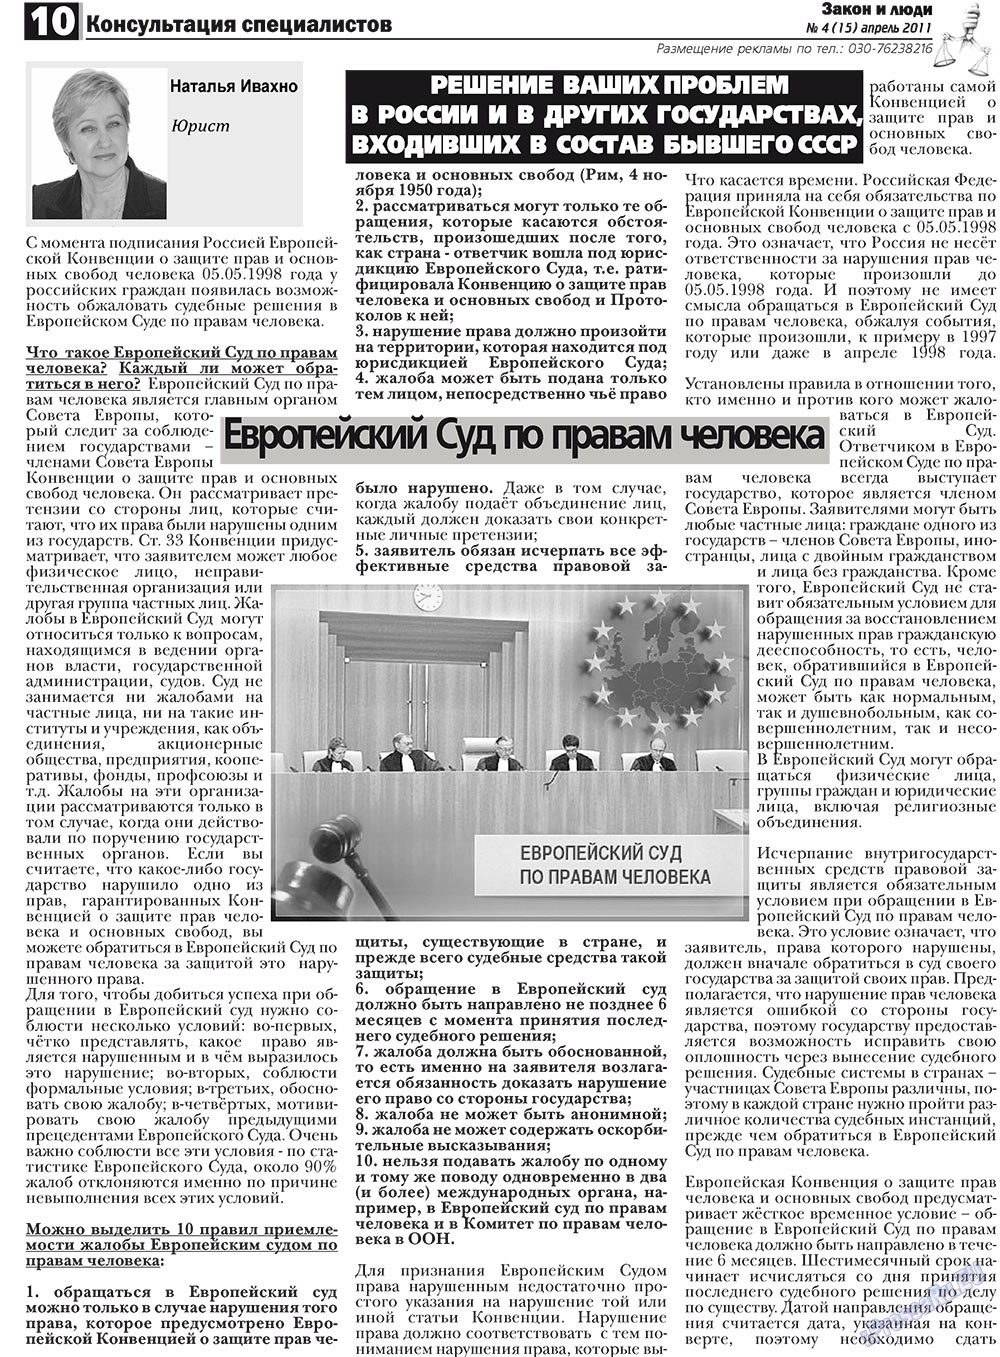 Закон и люди, газета. 2011 №4 стр.10